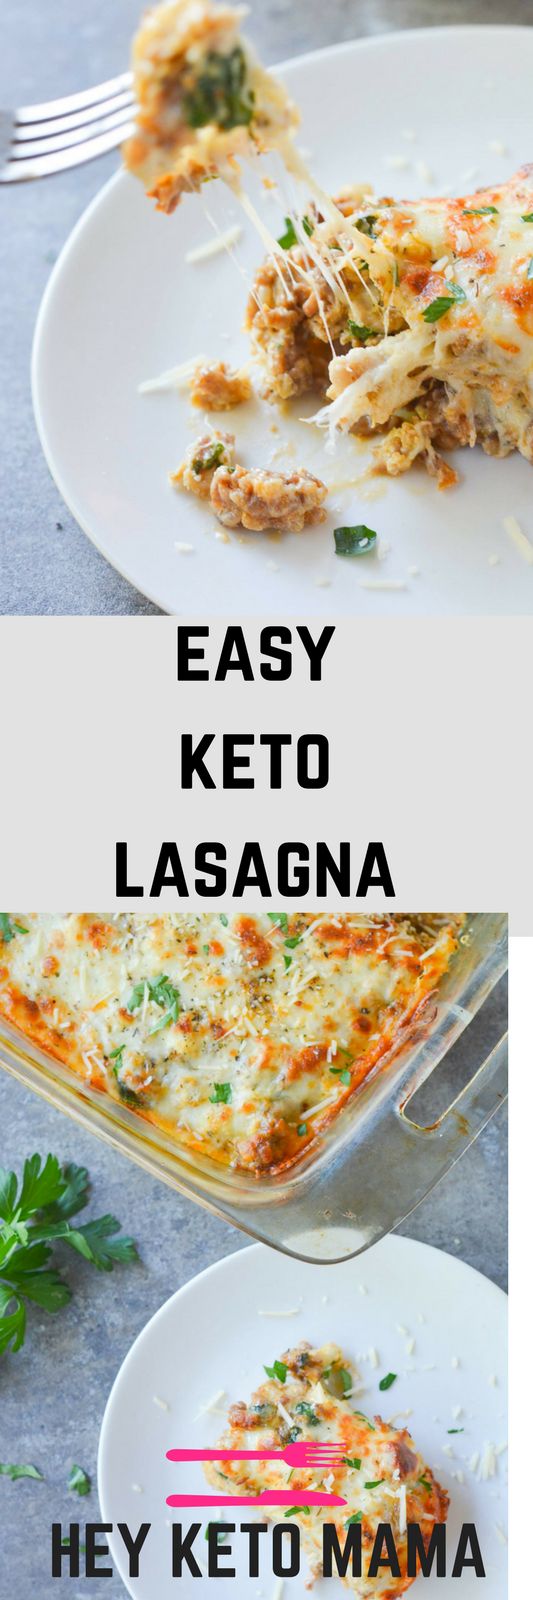 Easy Keto Lasagna